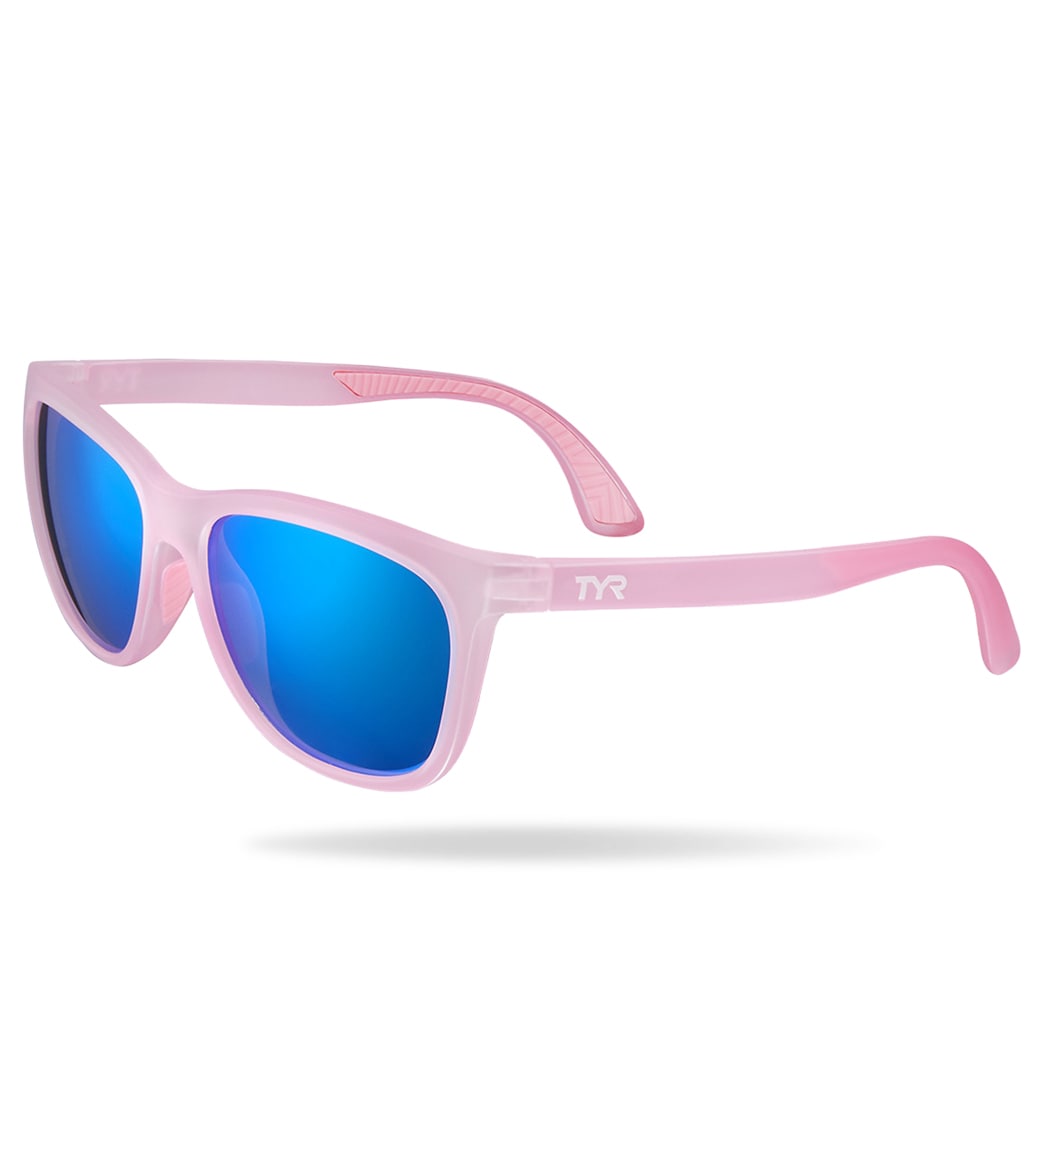 TYR Women's Carolita Lifestyle I Sunglasses - Blue/Pink - Swimoutlet.com